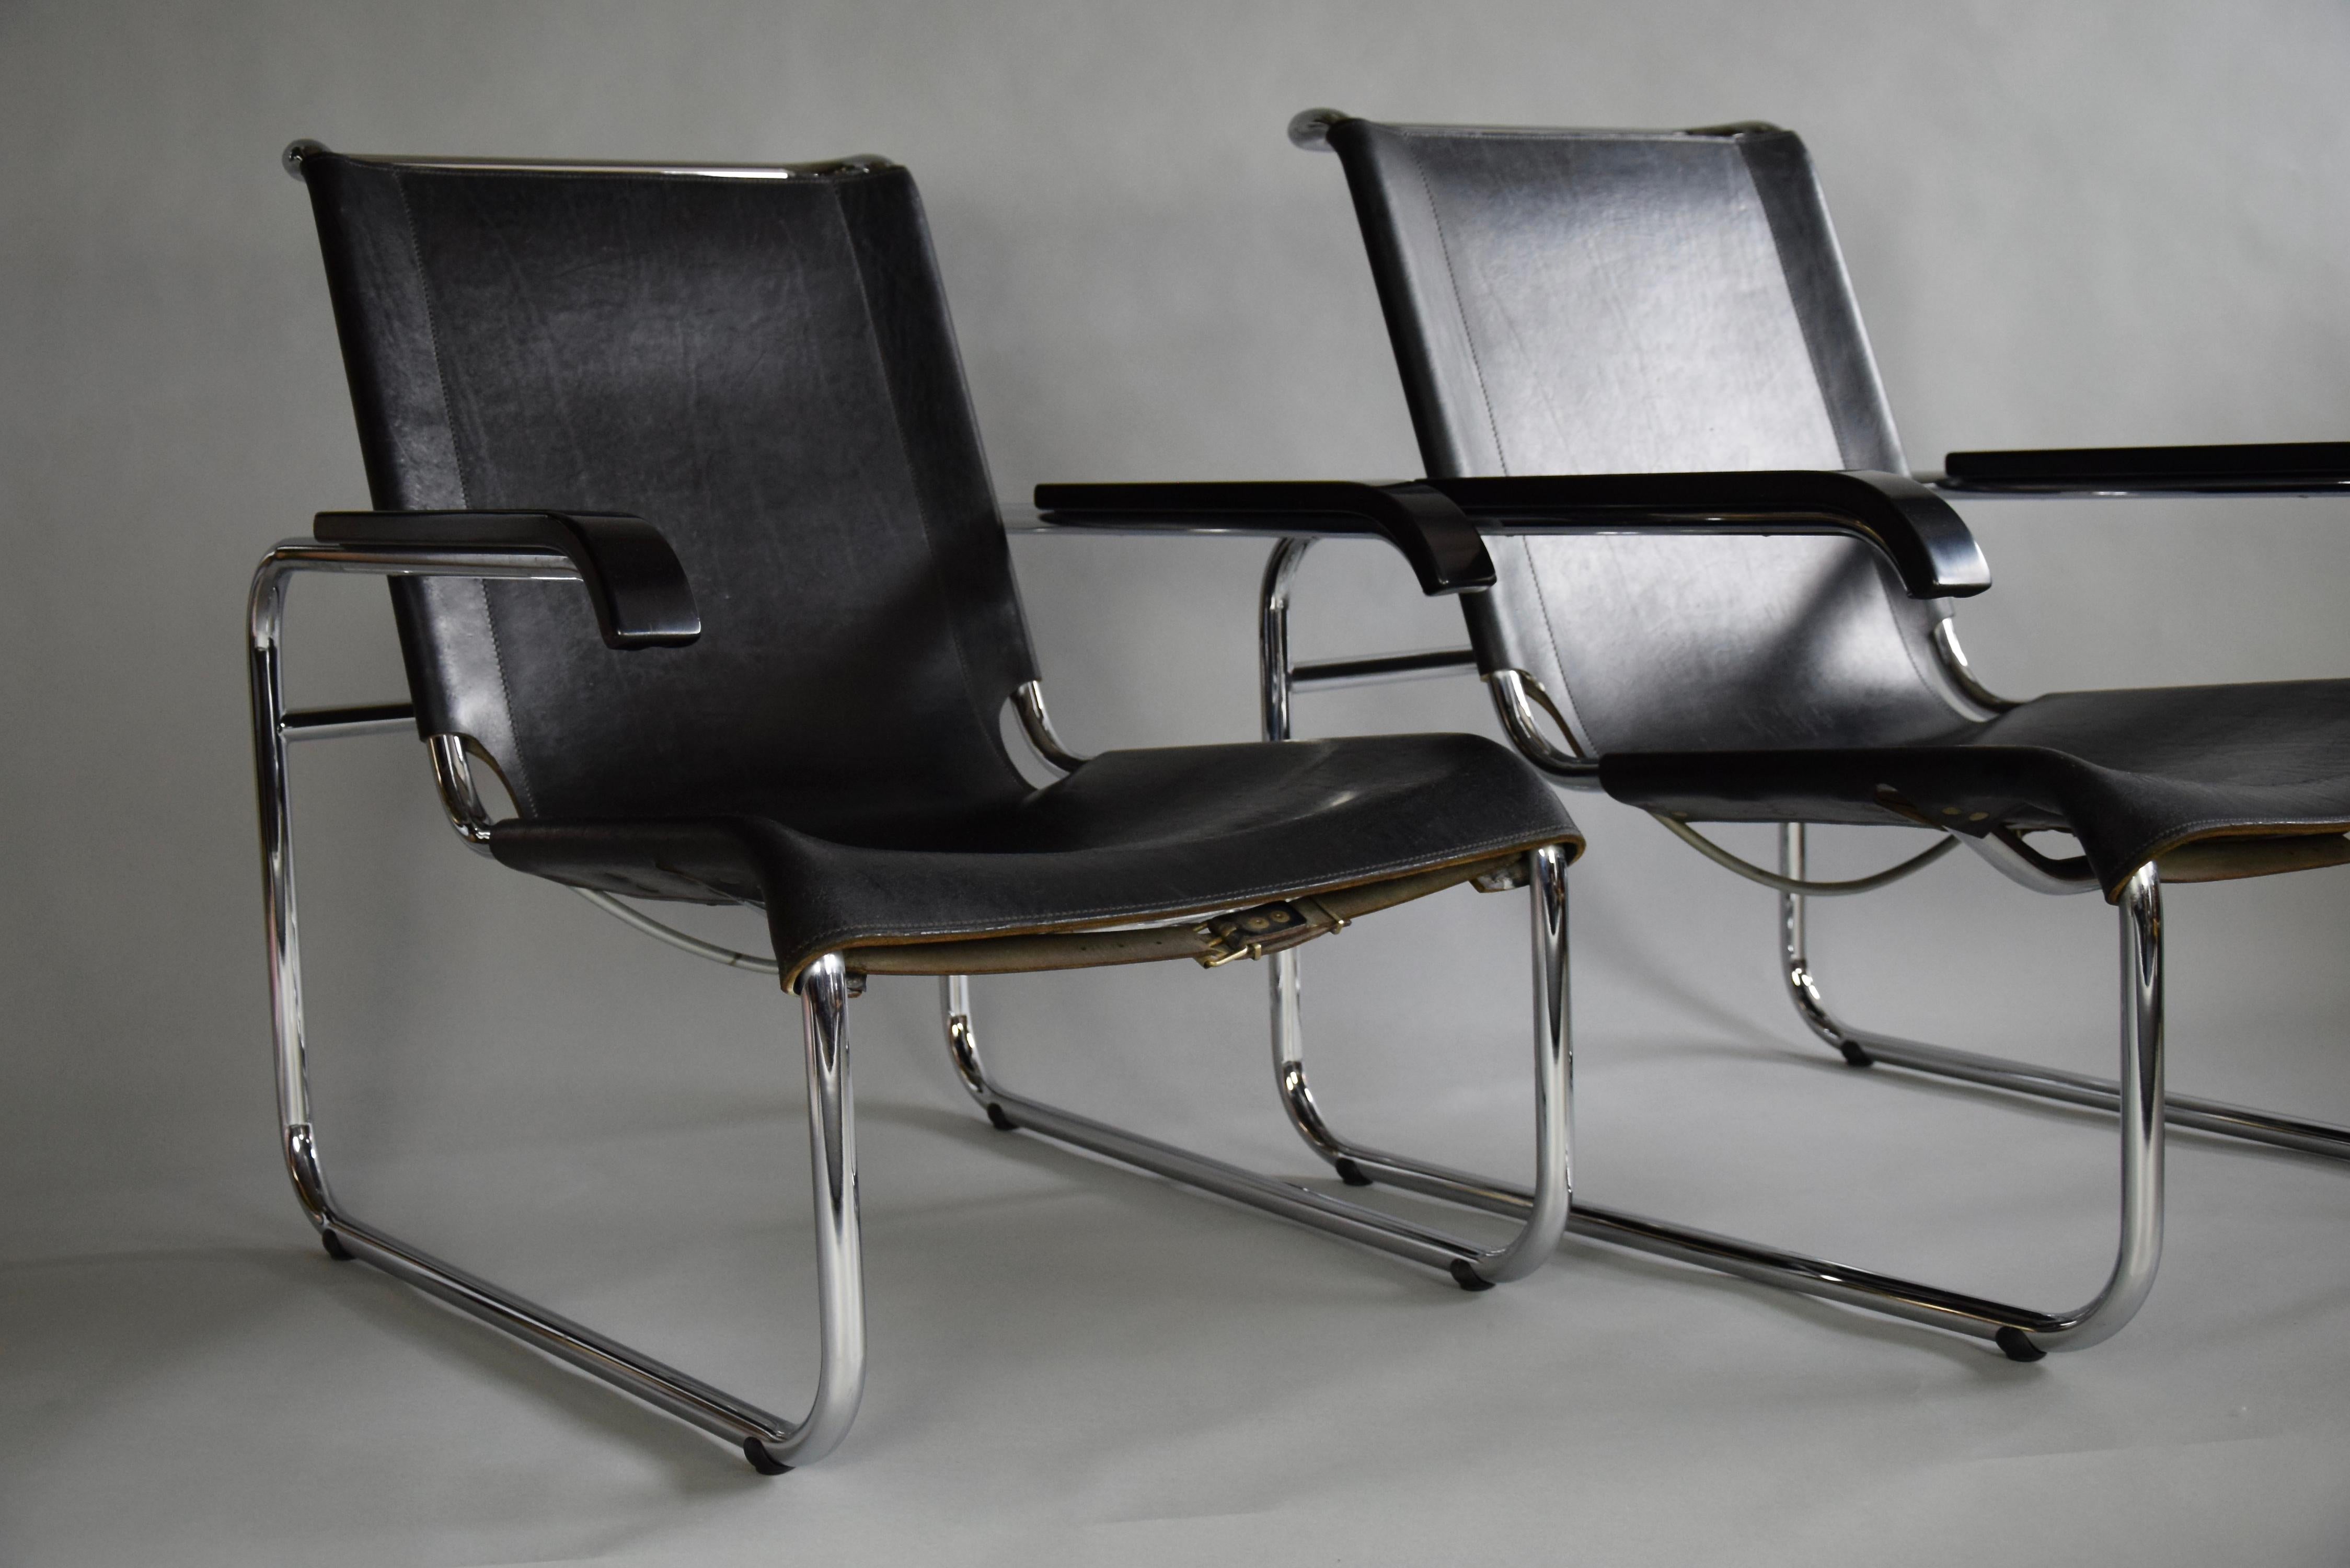 Schönes Paar B35 Lounge Stühle vom ersten Besitzer, der sie in den frühen 1970er Jahren gekauft hat. Die Armlehnen und das verchromte Rohrgestell wurden poliert und das Leder mit Lederpolitur behandelt. Die Stühle sind in einem sehr guten Zustand,